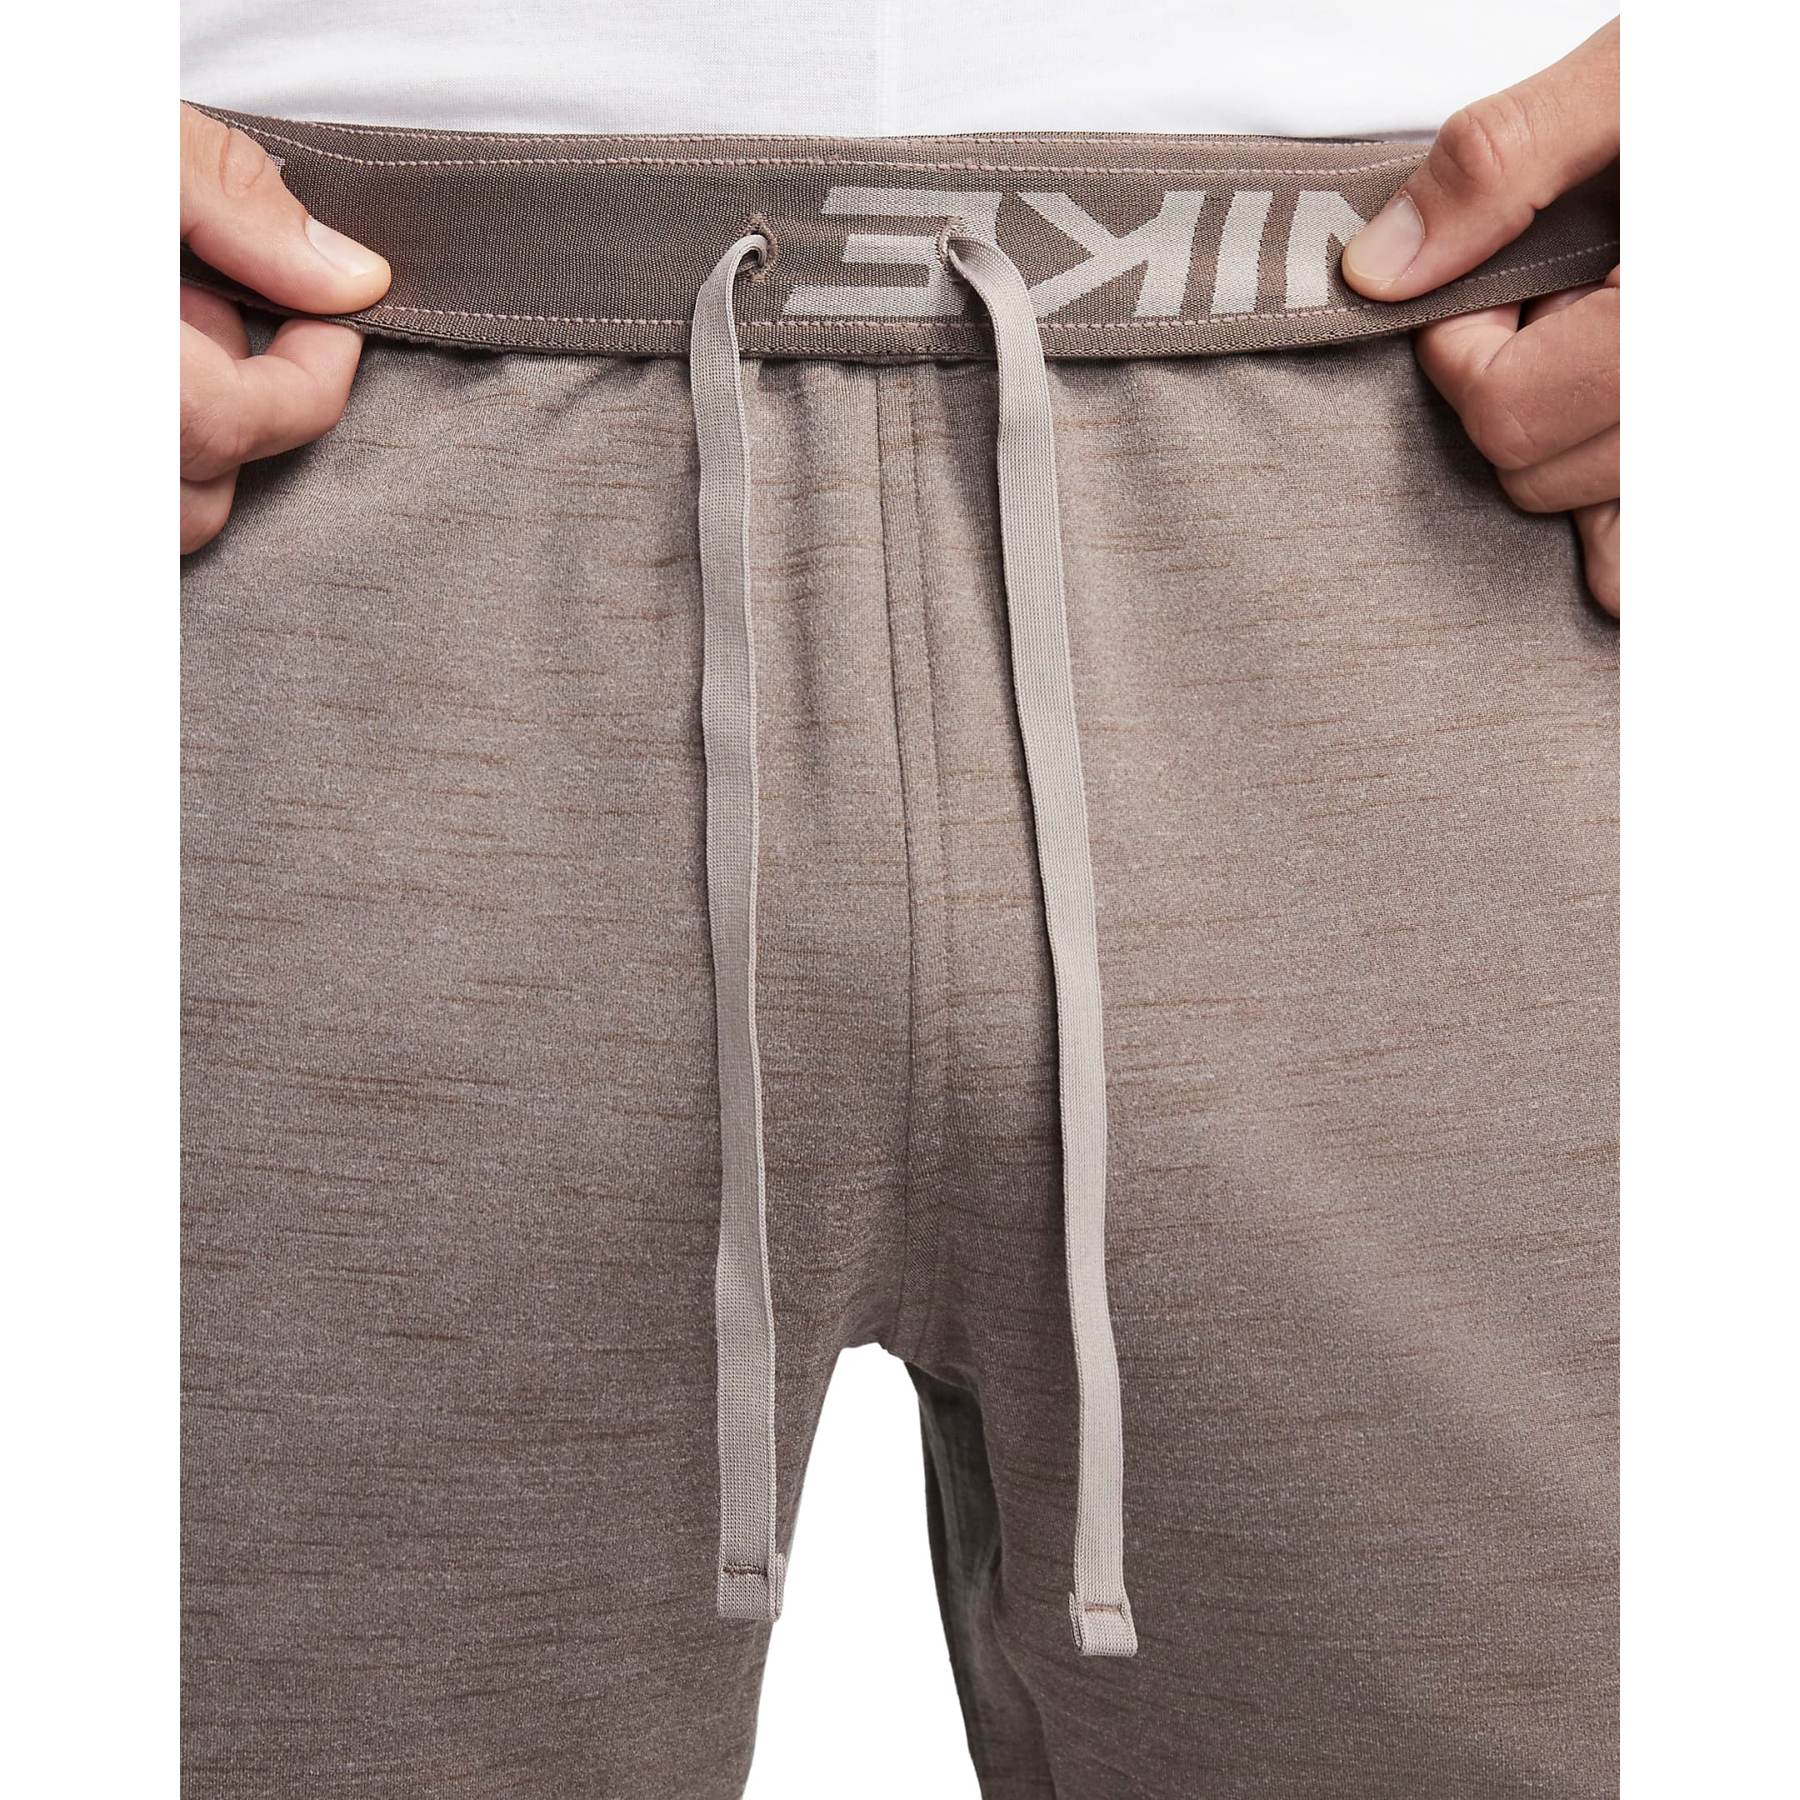 Nike Yoga Dri-Fit Pants Men - moon fossil/ironstone/black CZ2208